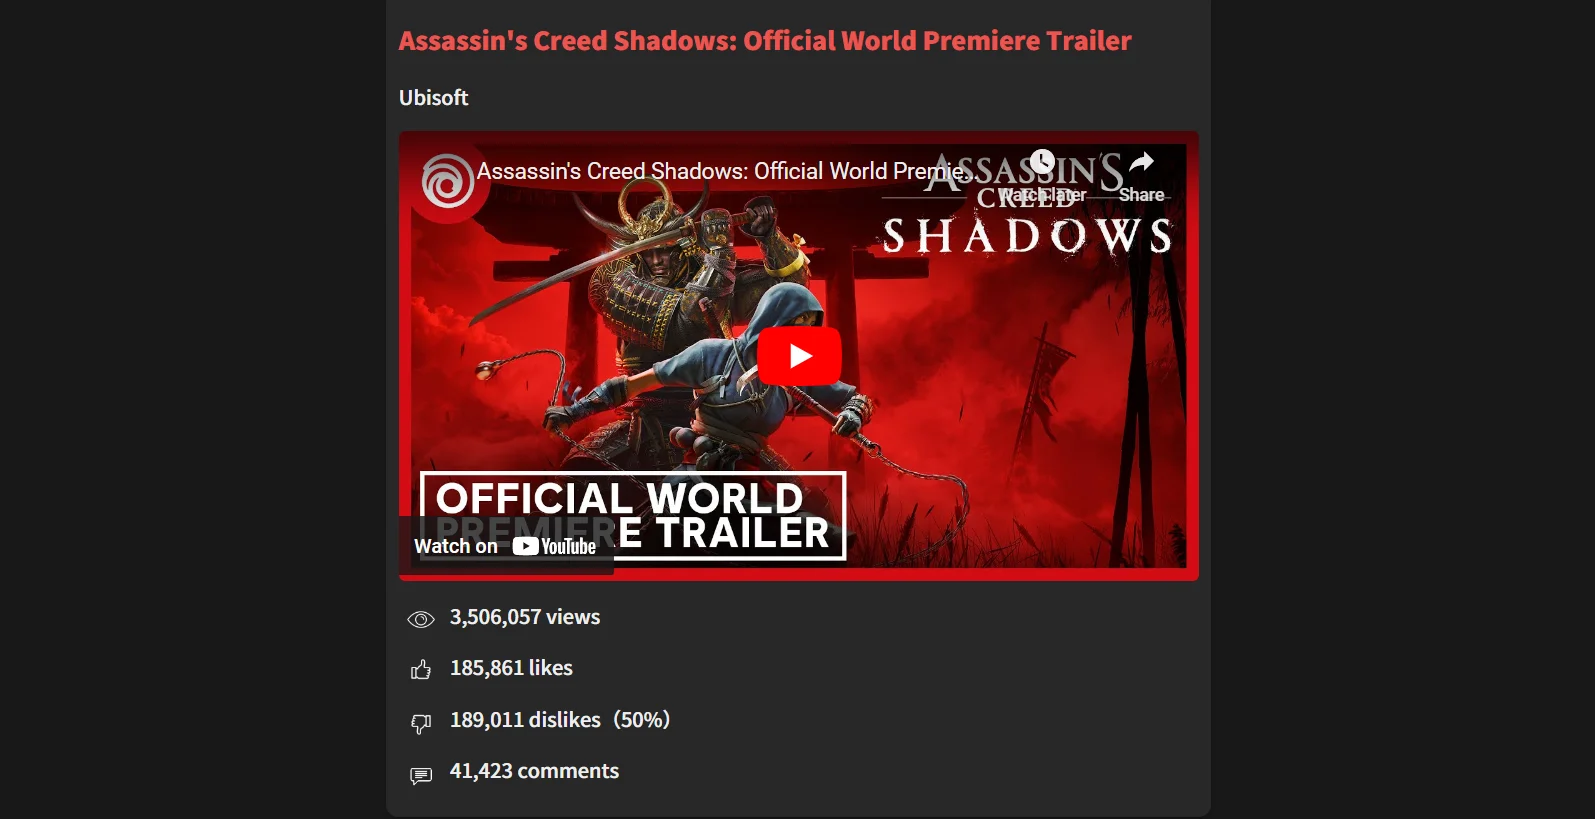 Трейлеры Assassins Creed Shadows получили огромное количество дизлайков - фото 1